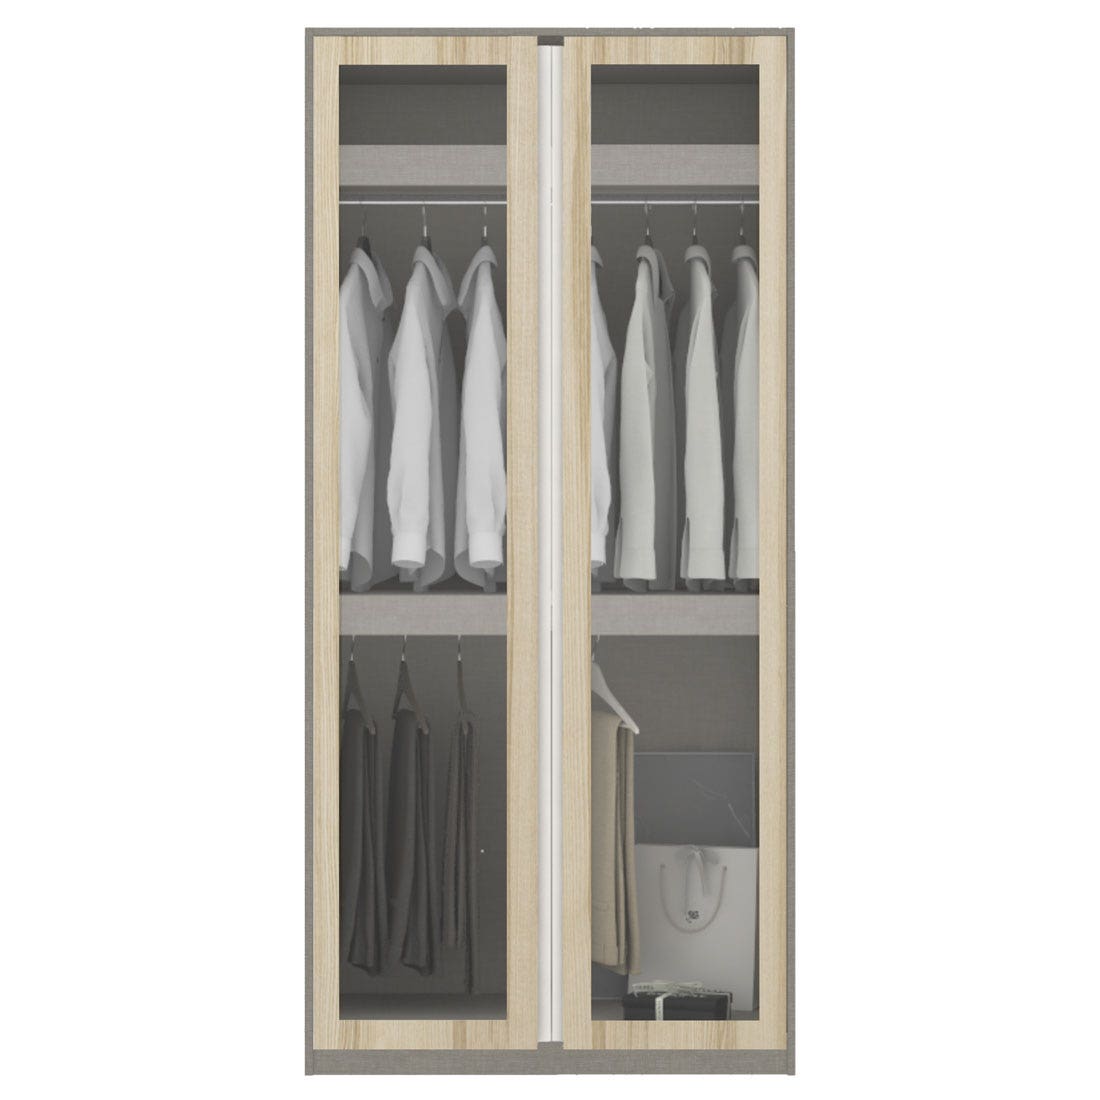 ตู้เสื้อผ้า แขวนบน-ล่าง OP-B ขนาด 100 ซม. รุ่น Blox สีไม้อ่อน&กระจกใส1